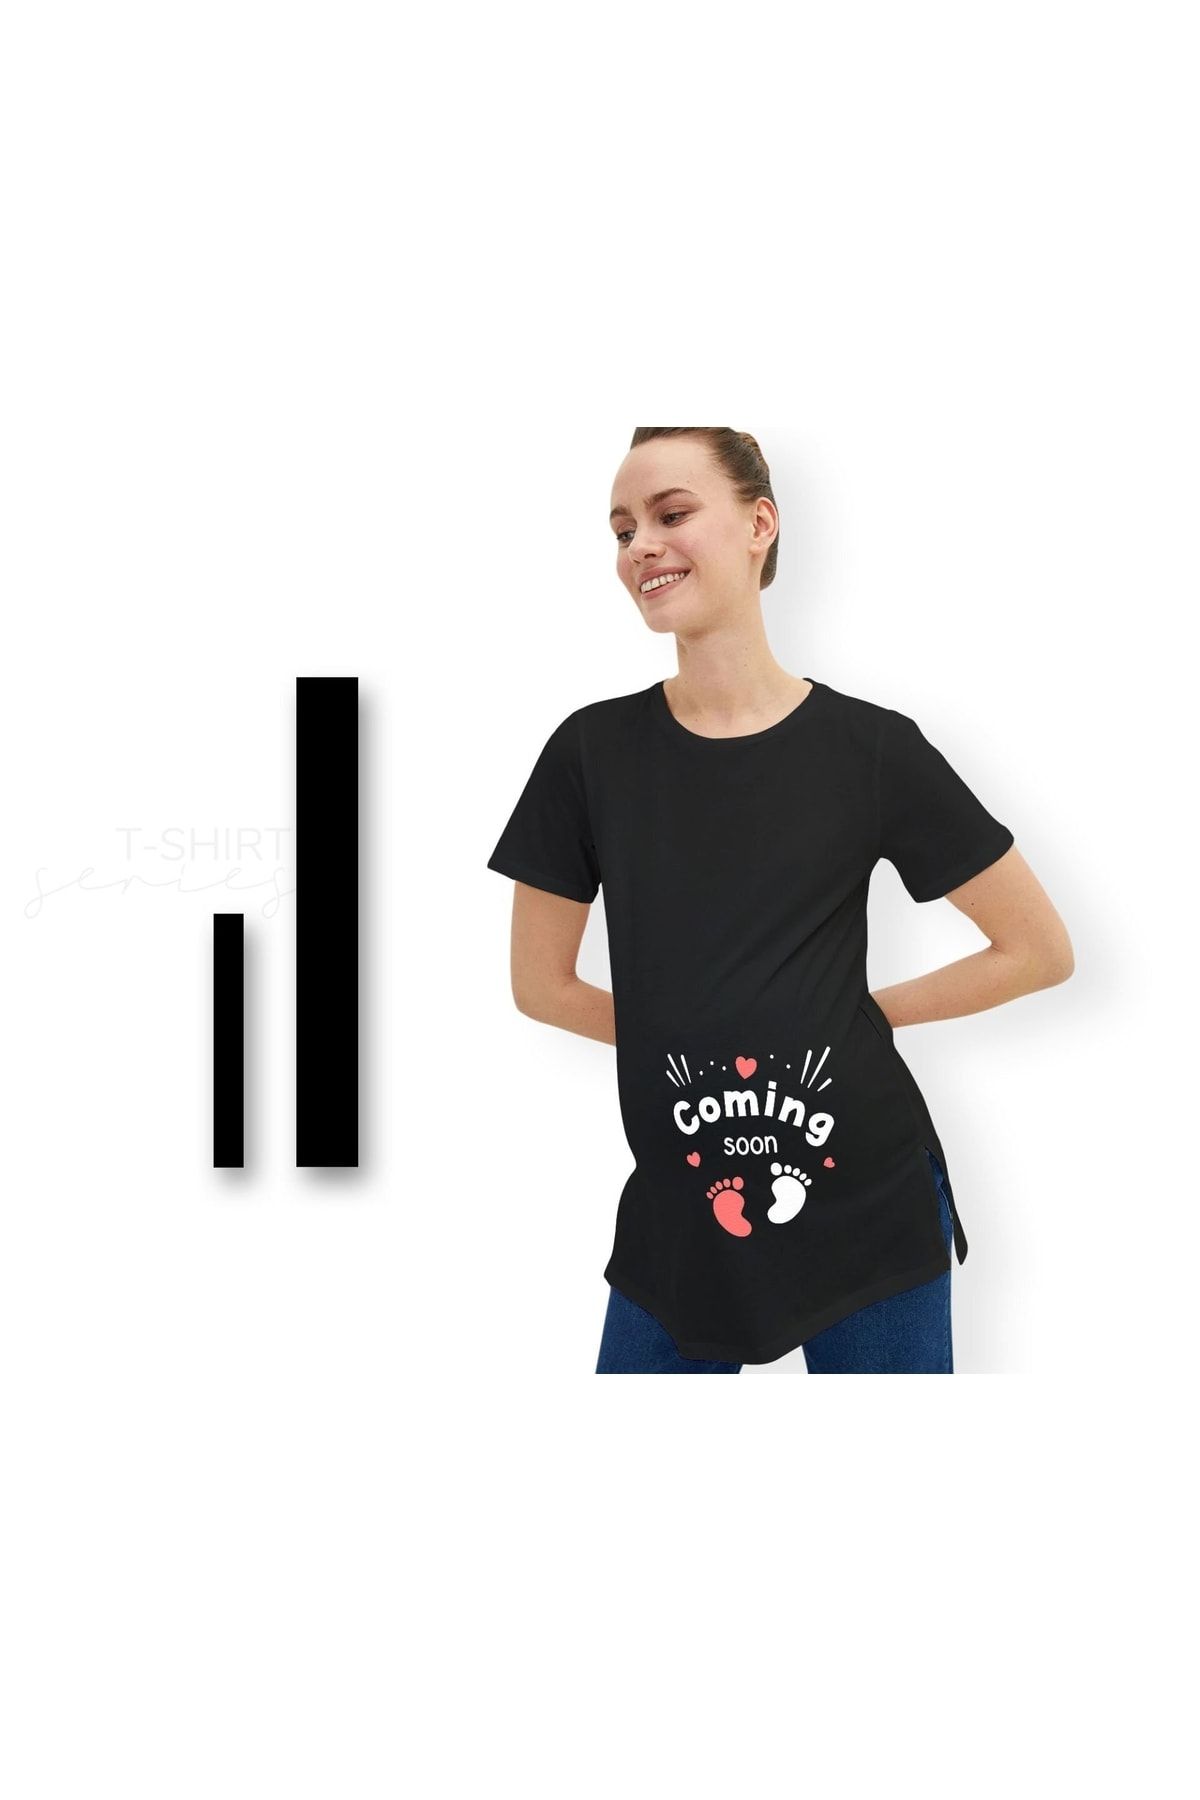 Bk Gift Espri Tasarımlı Siyah Hamile Tişörtü, Hamileye Hediye, Yeni Anne Hediyesi, Arkadaşa Hediye-1